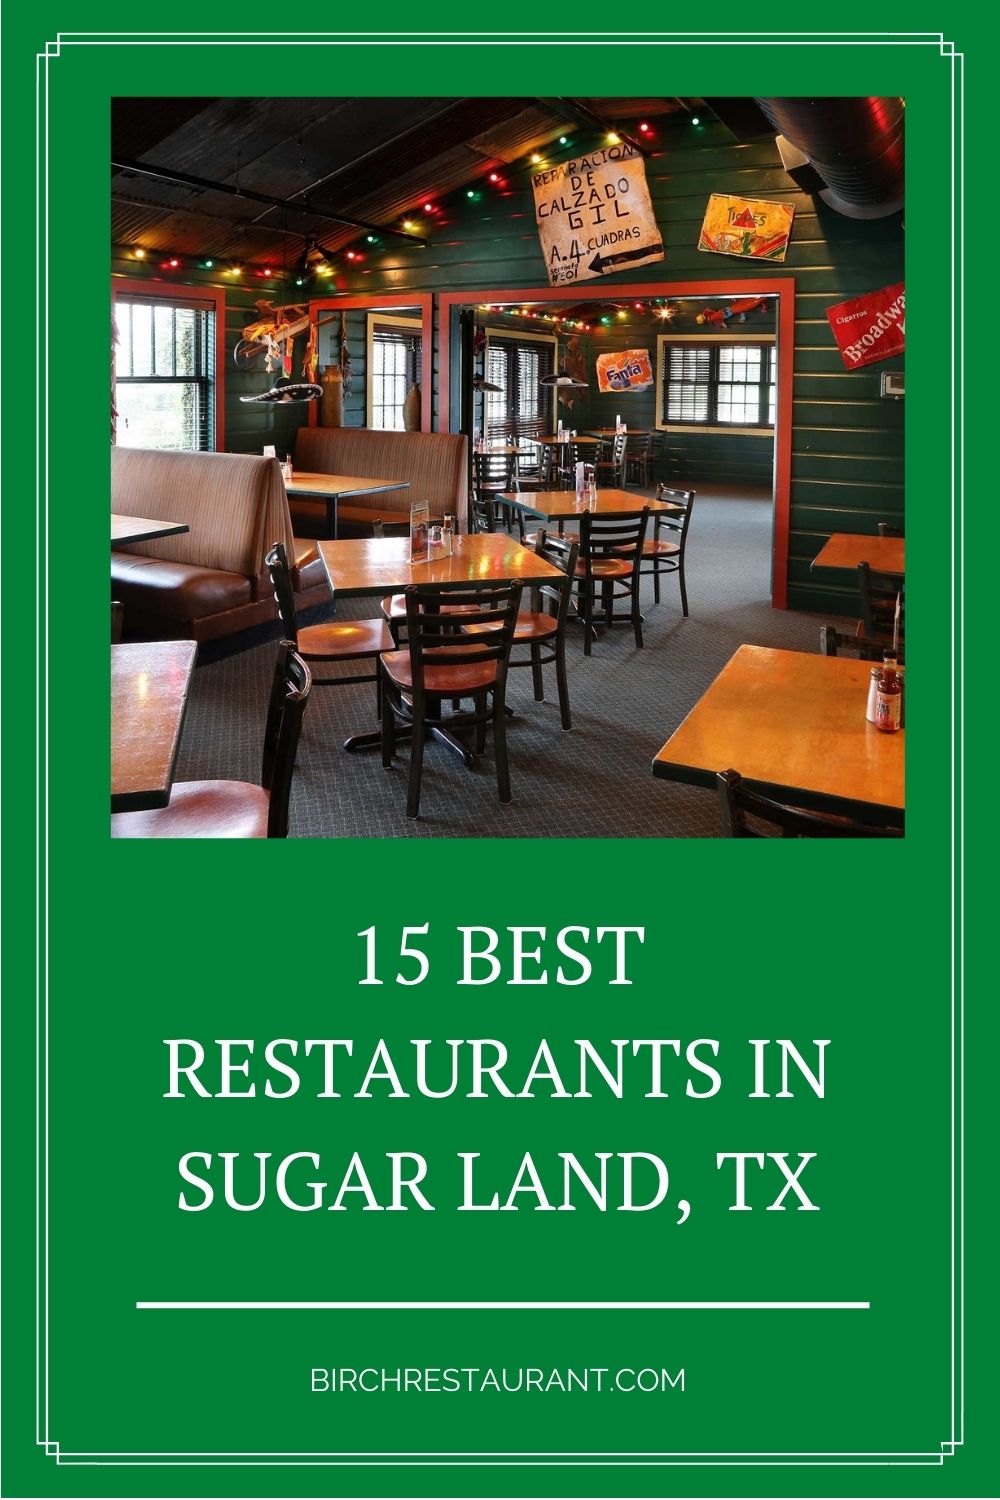 Best Restaurants in Sugar Land